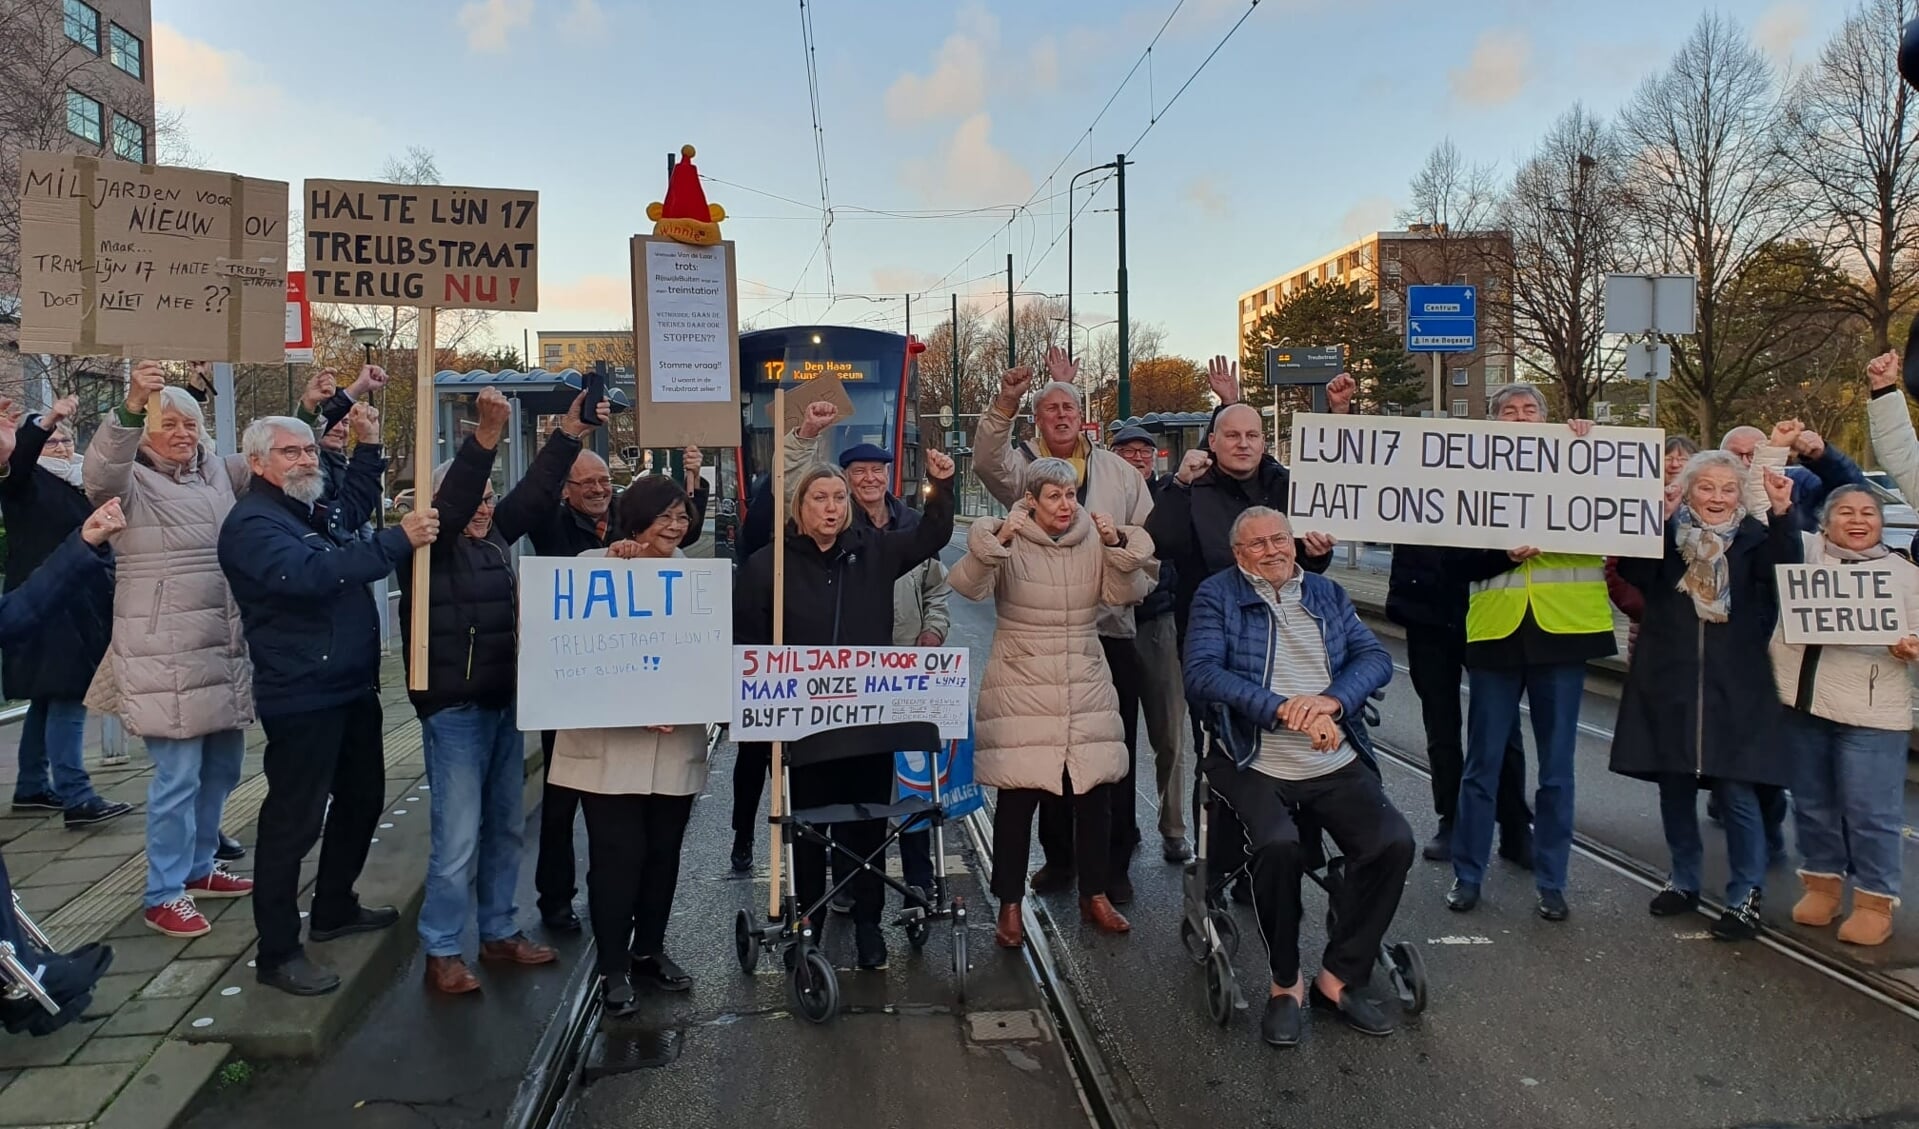 De tweede demonstratie in november van de bewoners van de Churchilltorens tegen de sluiting van 'hun' tramhalte, wierp niet voldoende vruchten af.